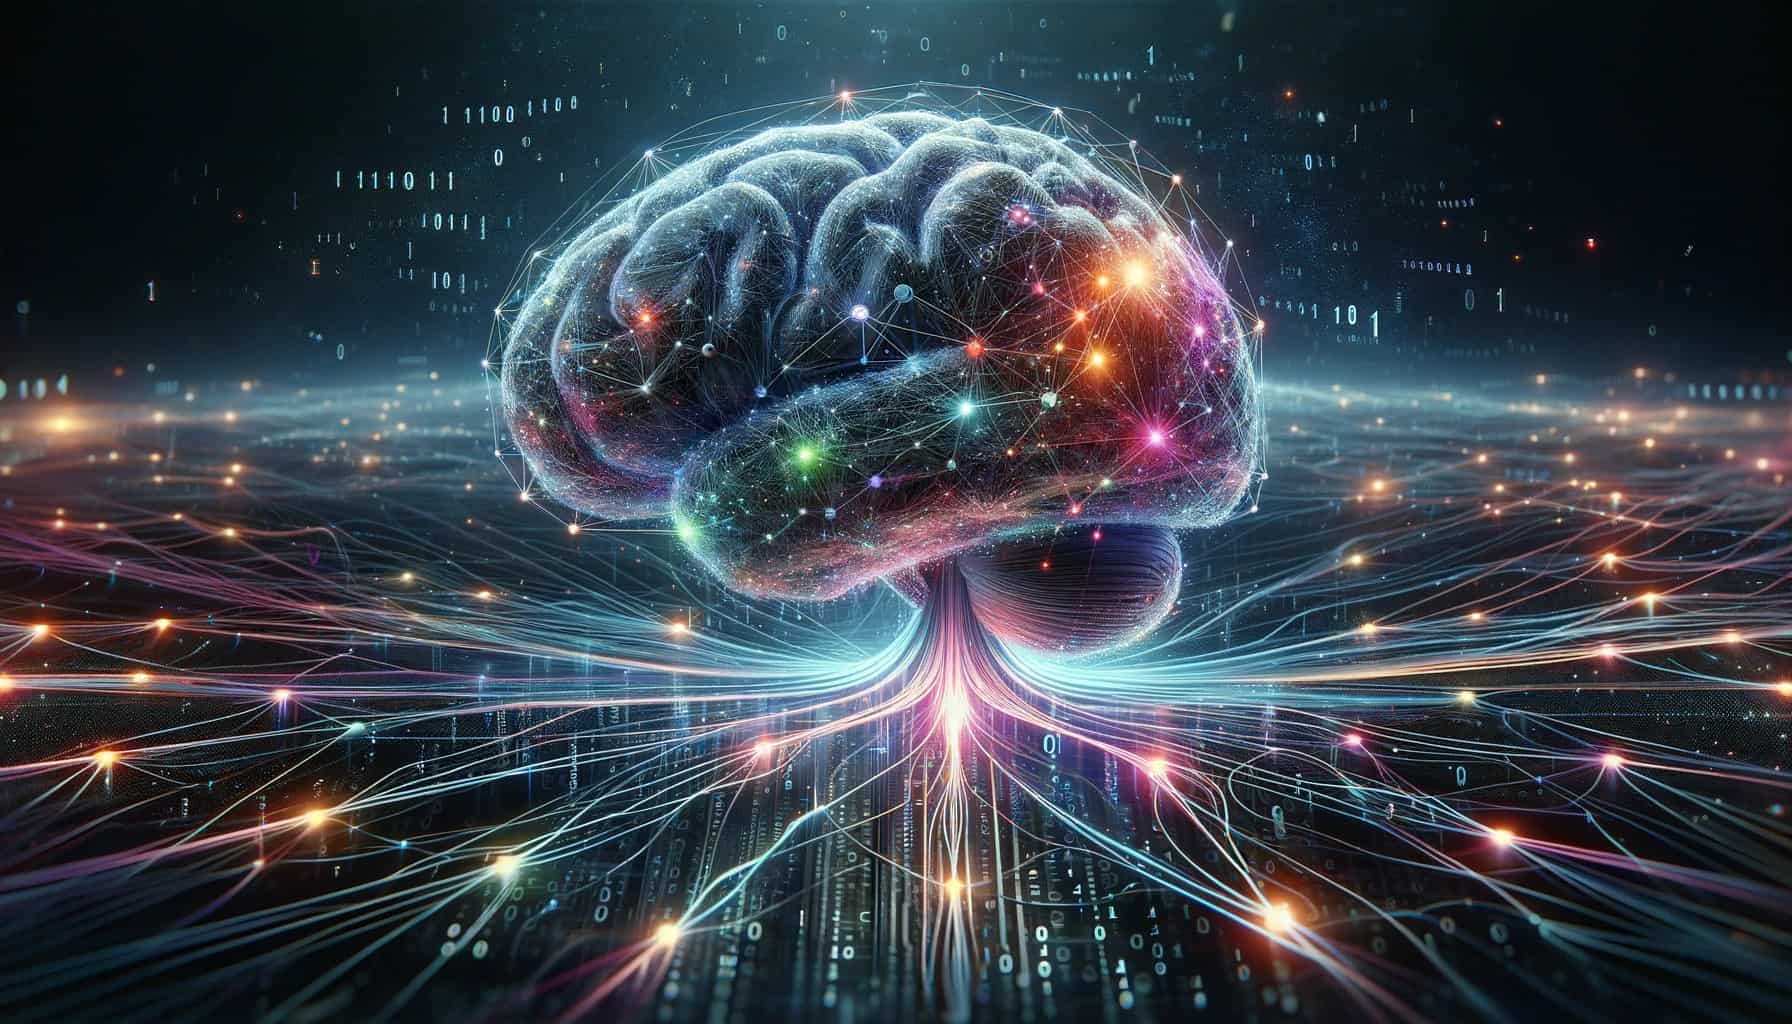 脳インプラント技術の未来 – 人の心をつなぐインターネットの興味深い一端を垣間見る